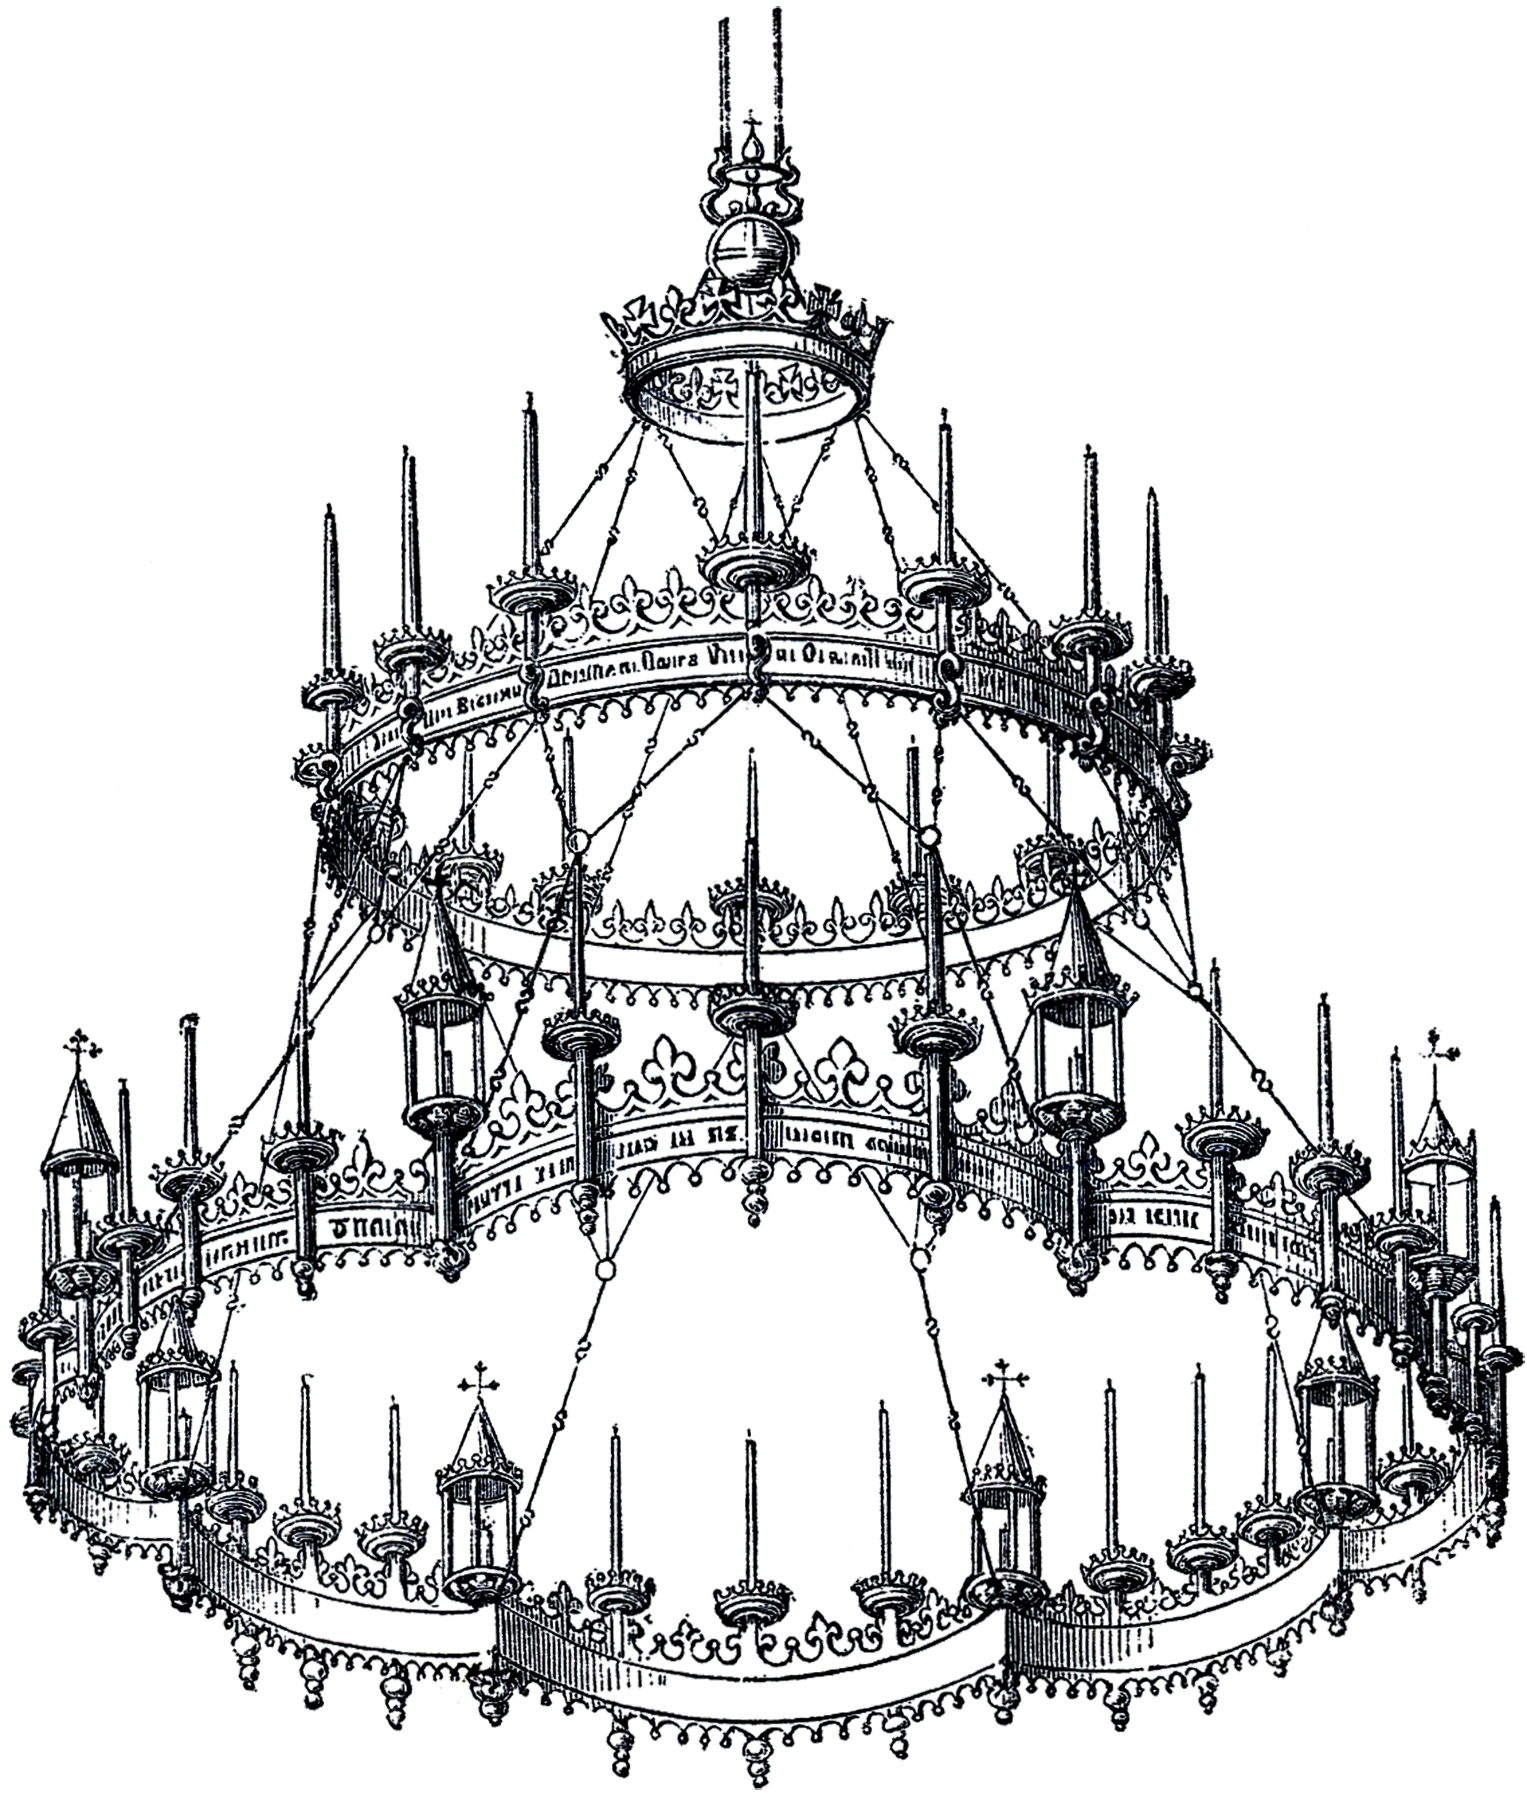 chandelier clipart gothic chandelier